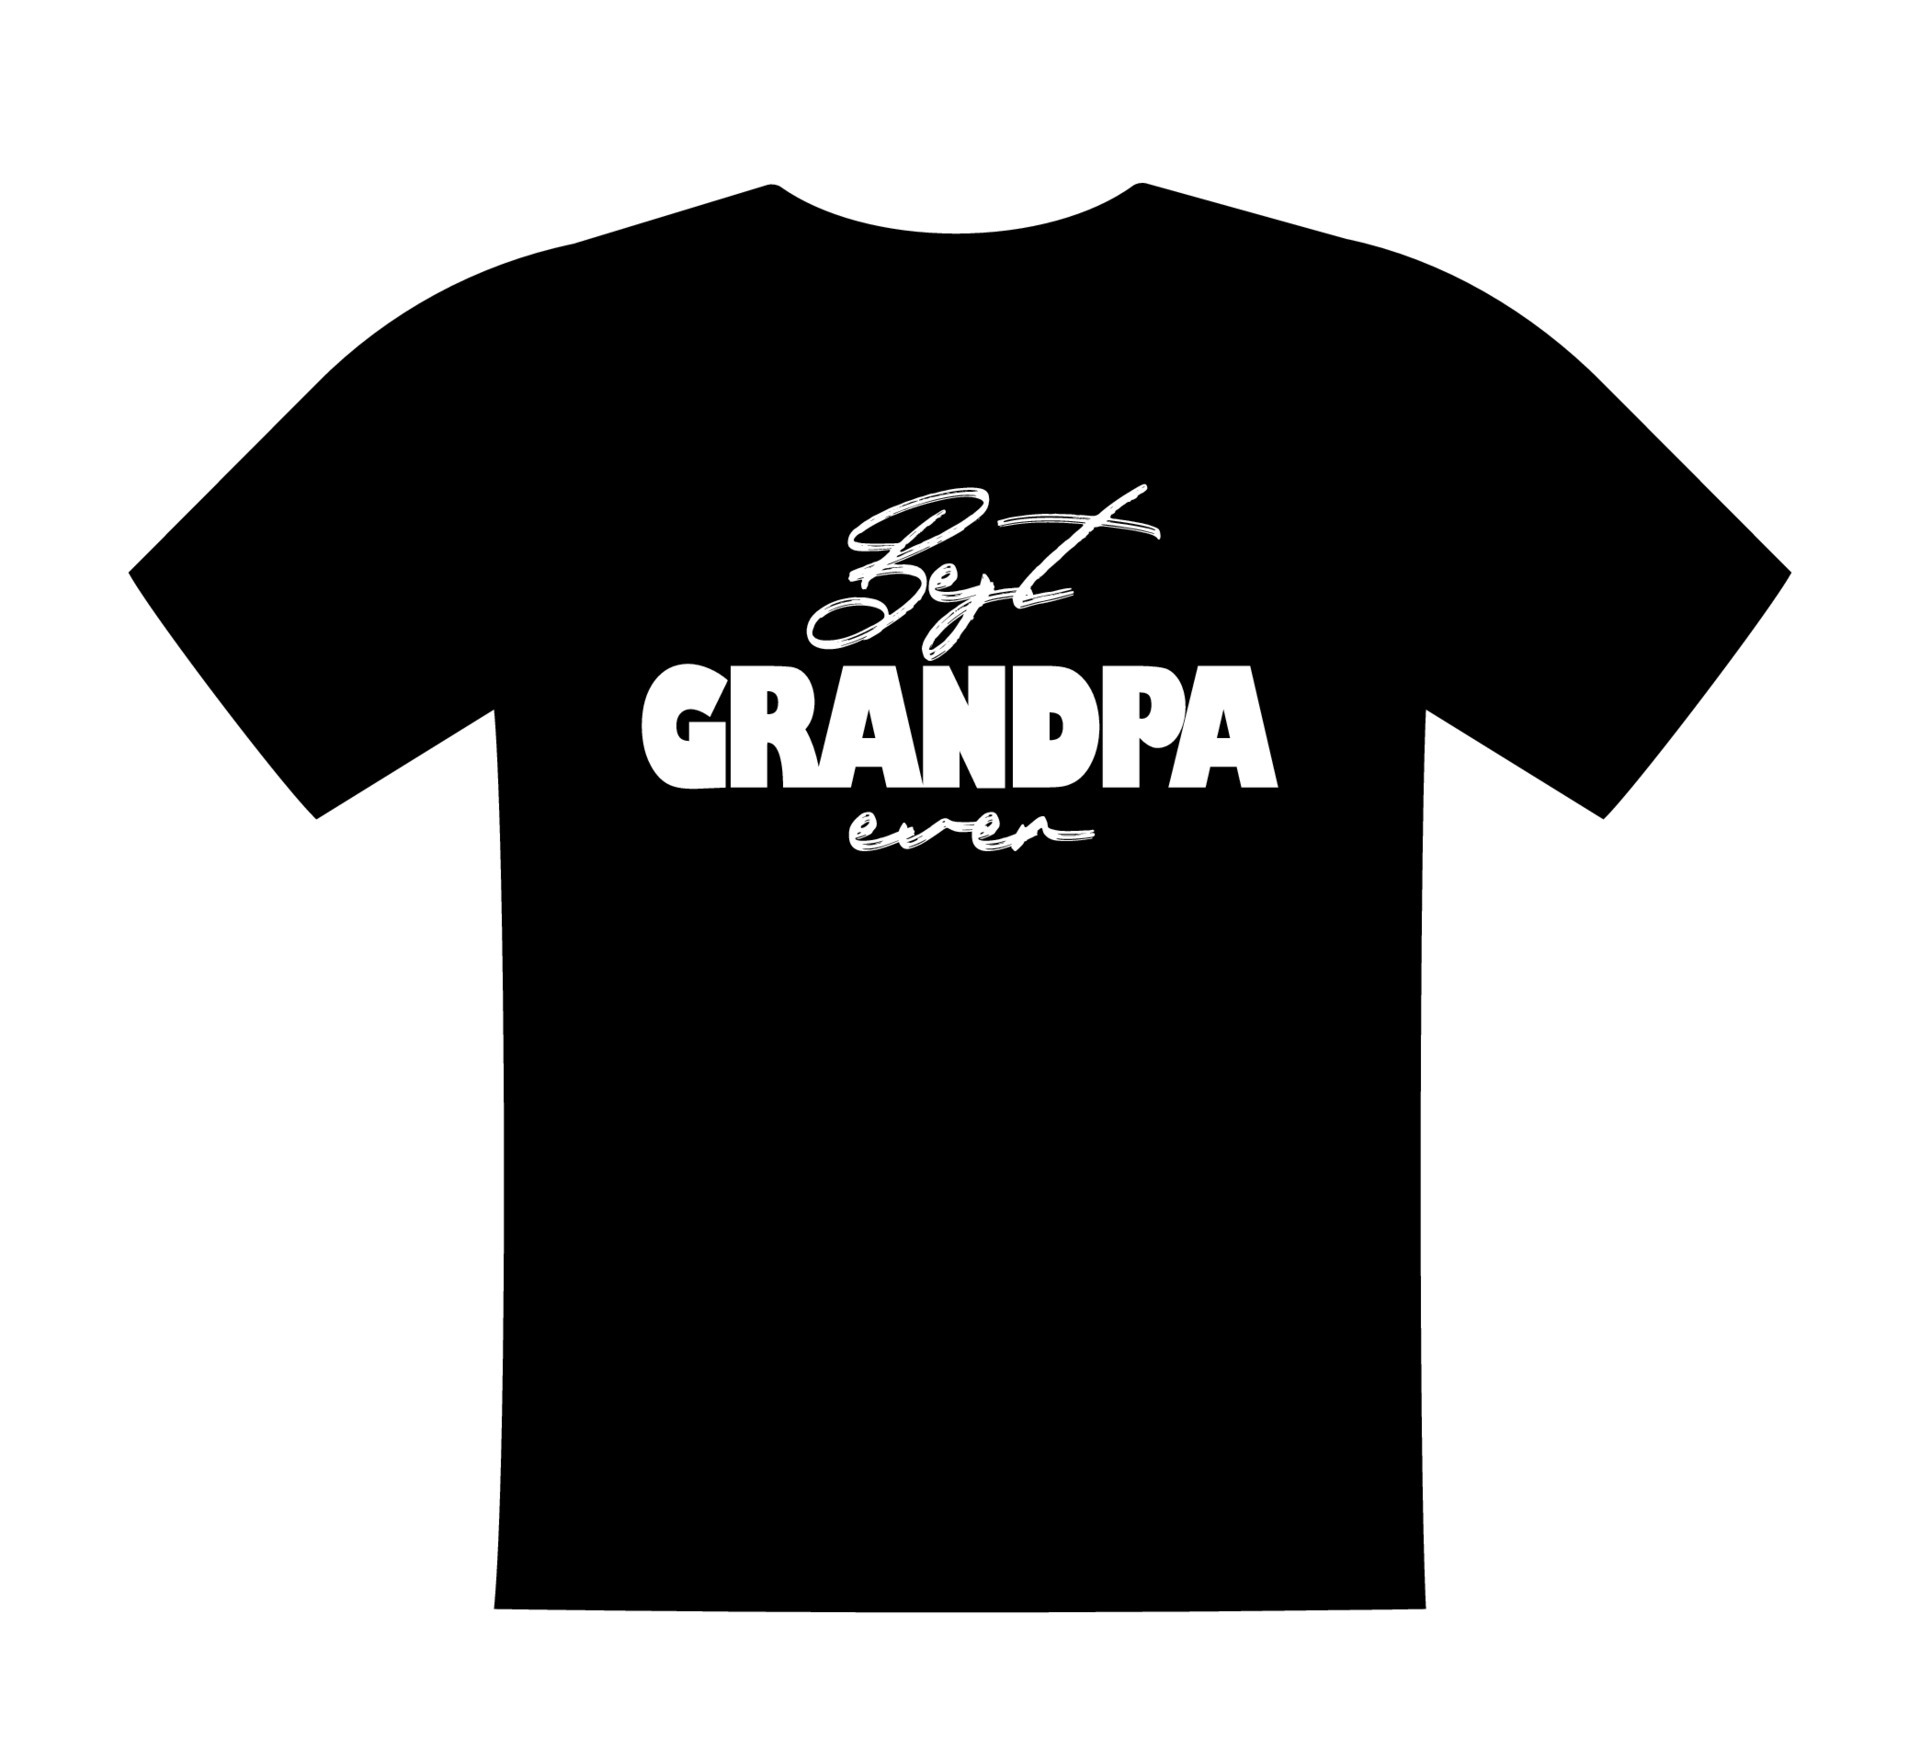 miglior nonno di sempre, scritte su t-shirt, modello di stampa di